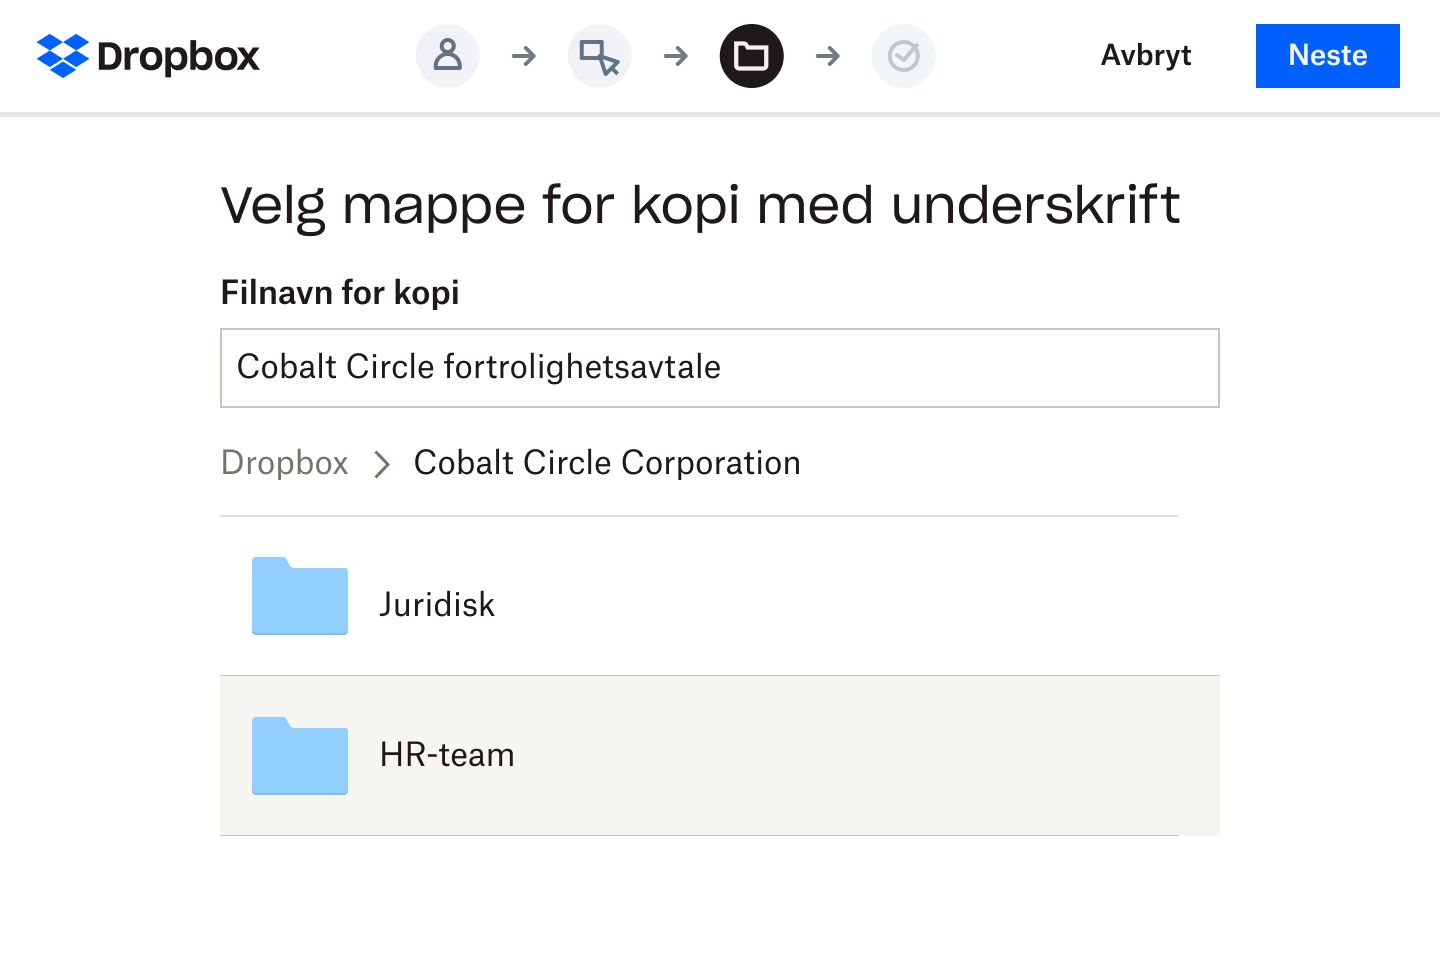 En bruker som velger en mappe i Dropbox der en digital versjon av et signert taushetserklæringsskjema vil bli lagret